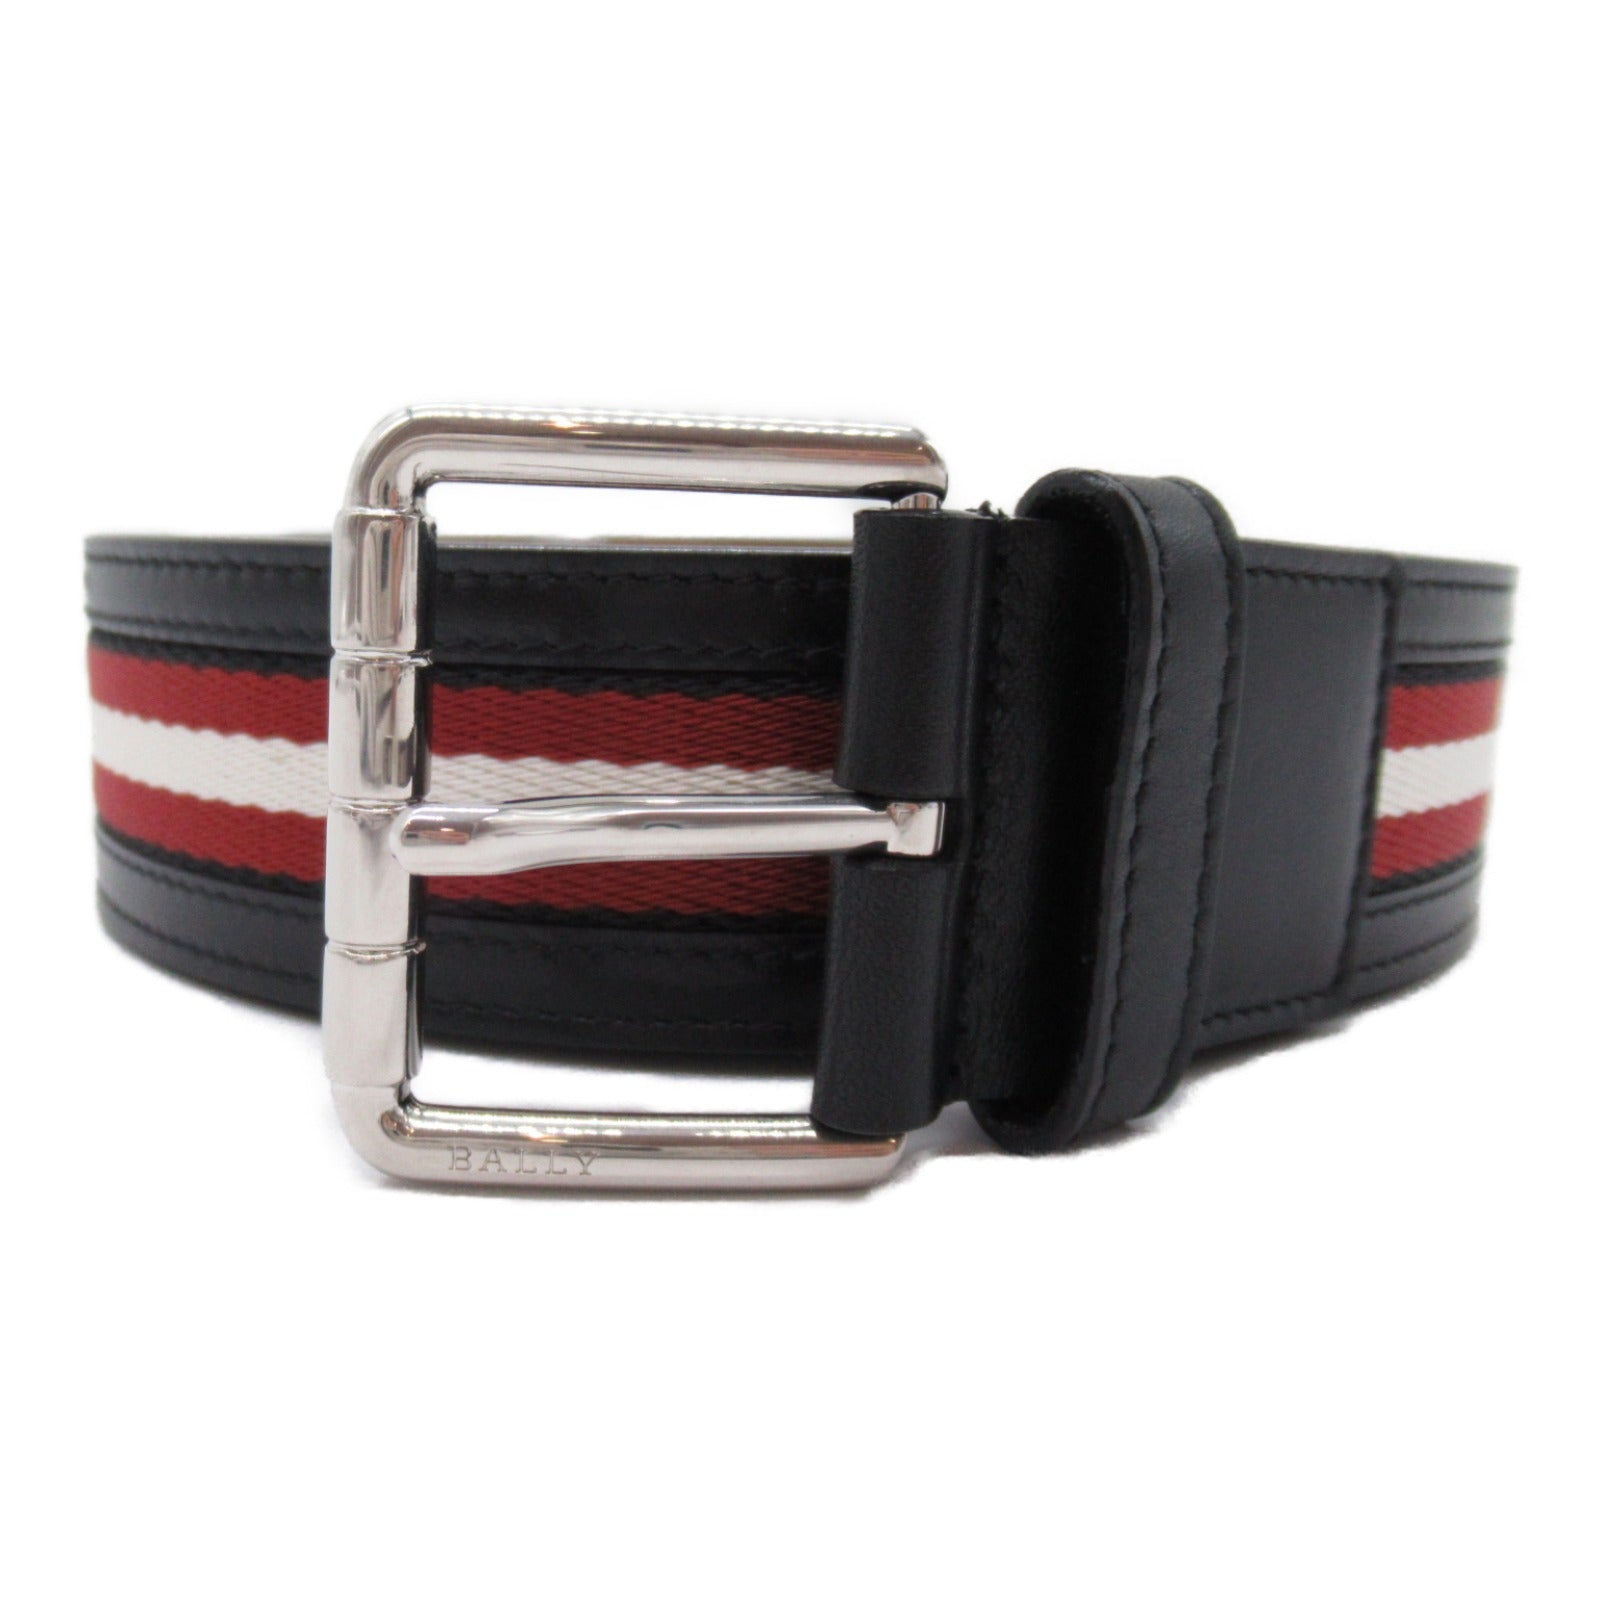 Barry BALLY Belt Belt Dresswear  Leather Red SBL6239326600982F066